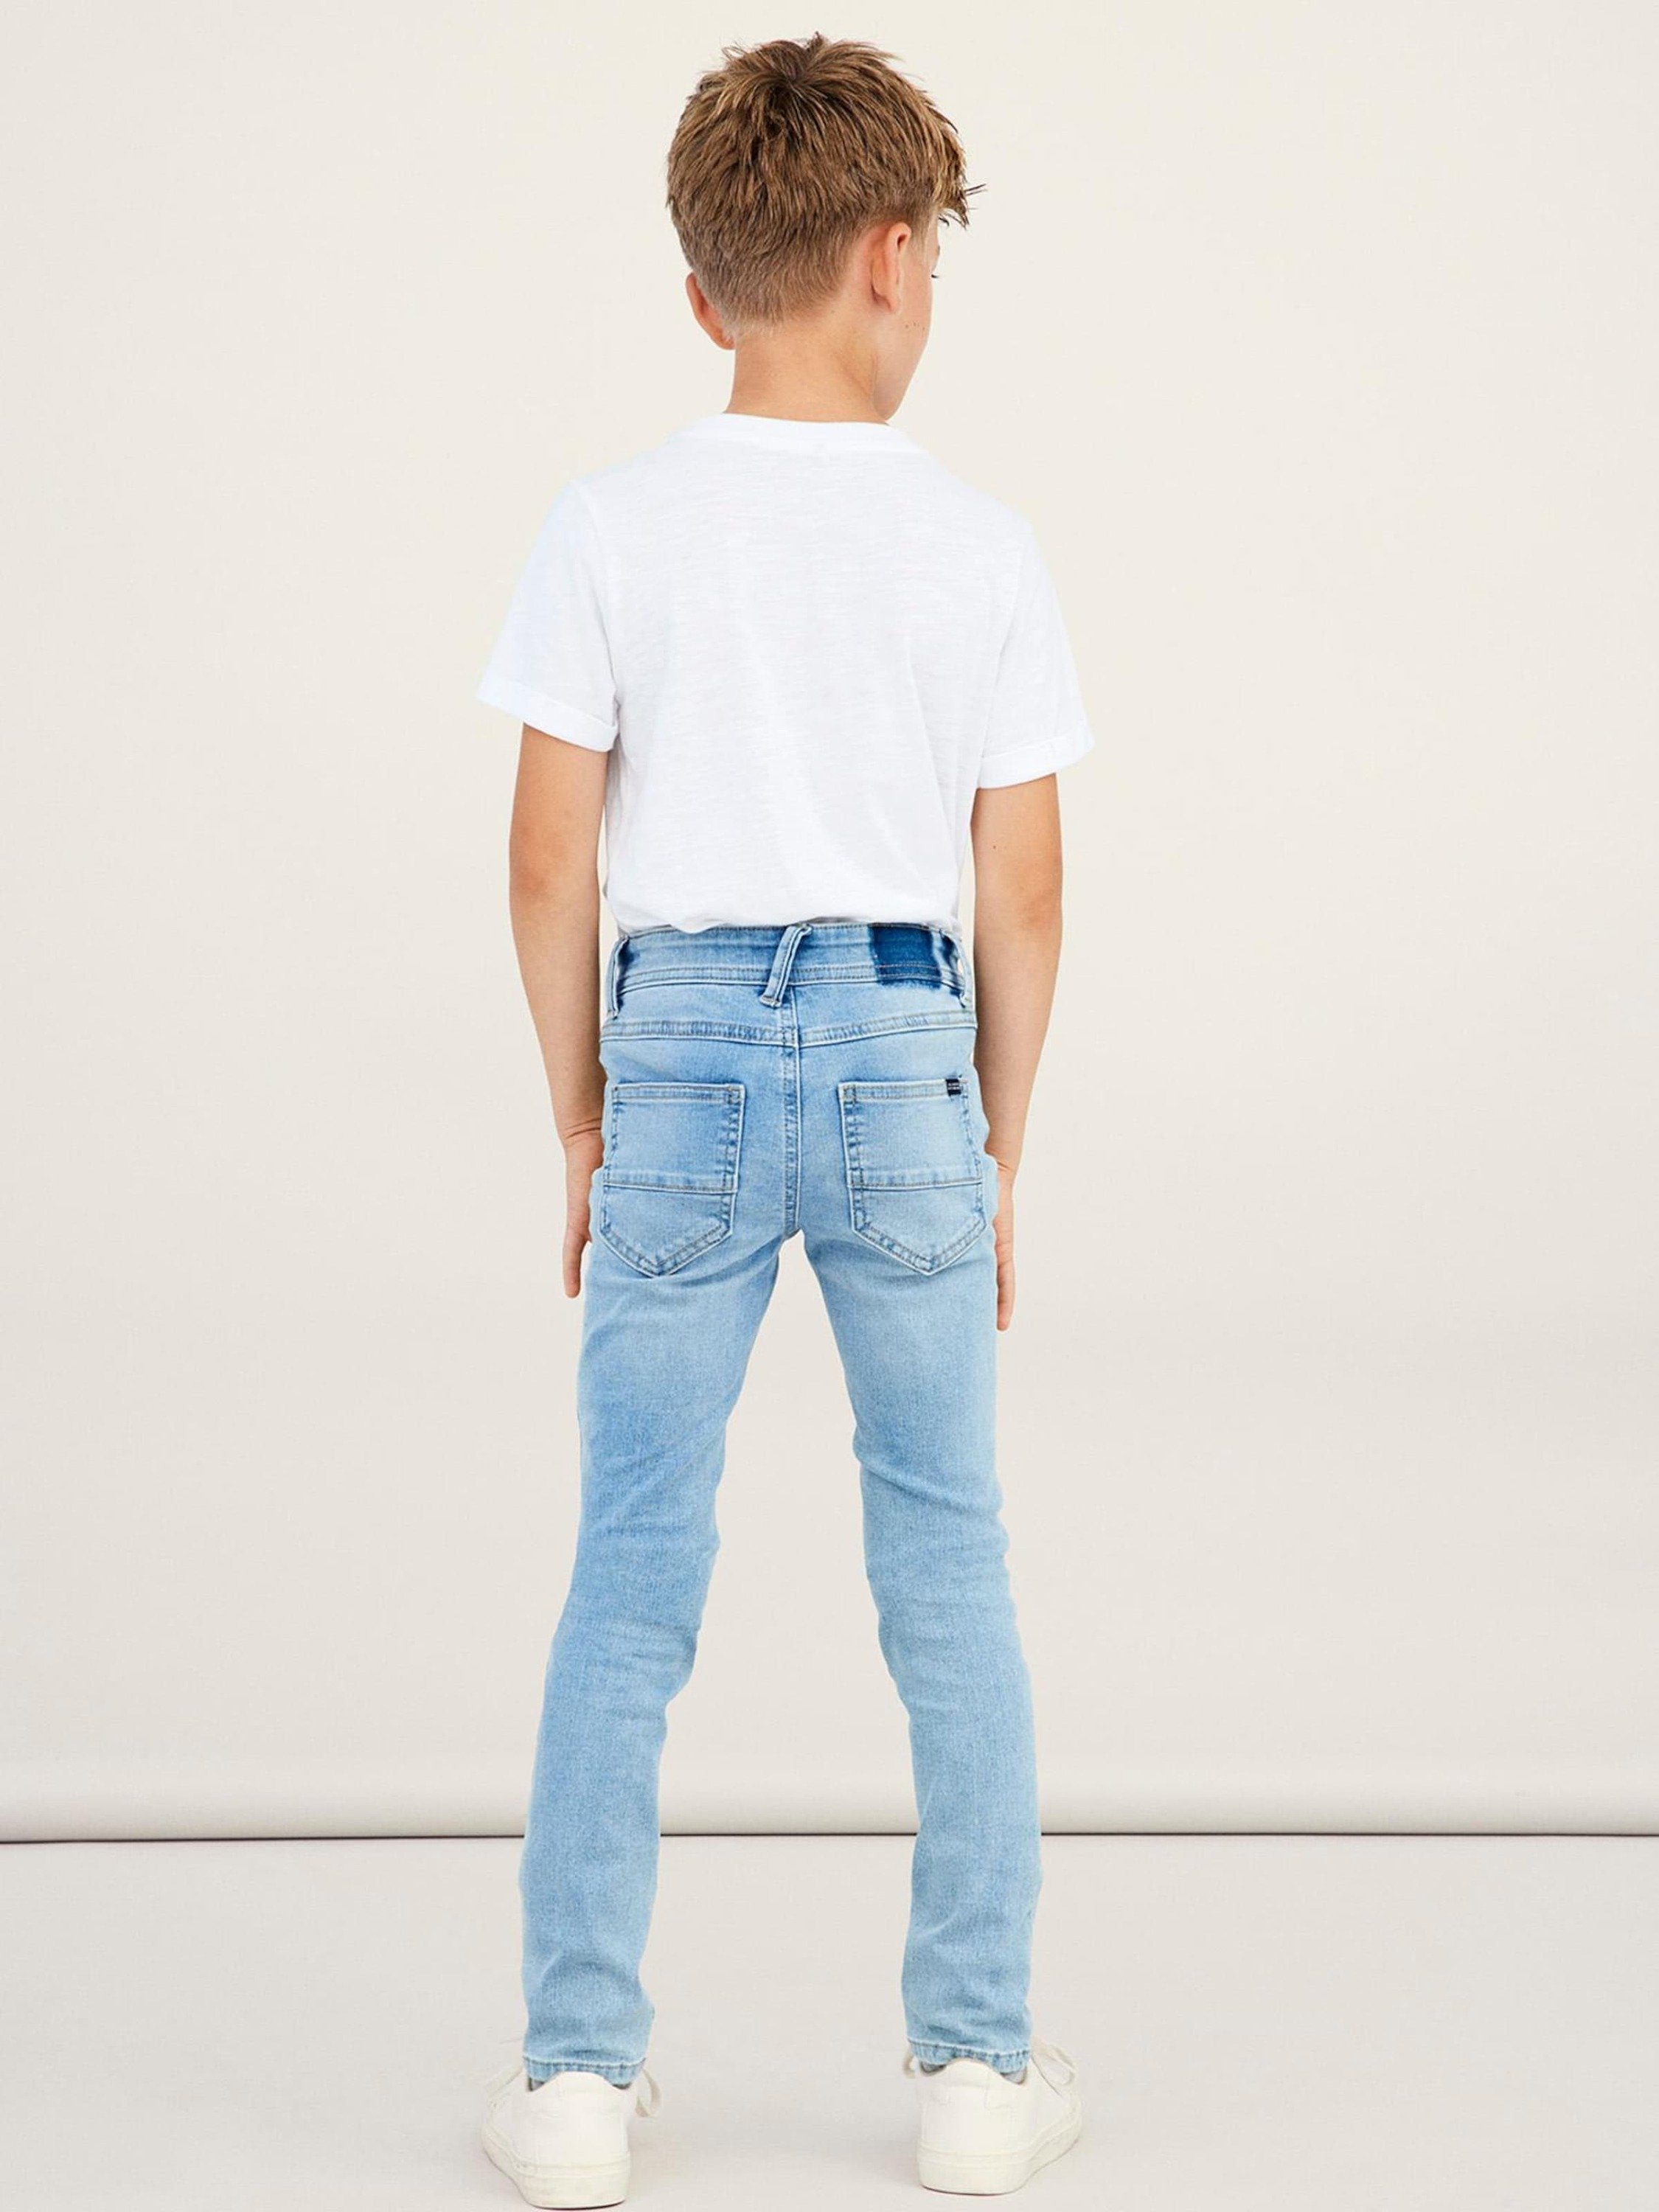 Jungen Skinny-Jeans online kaufen | OTTO